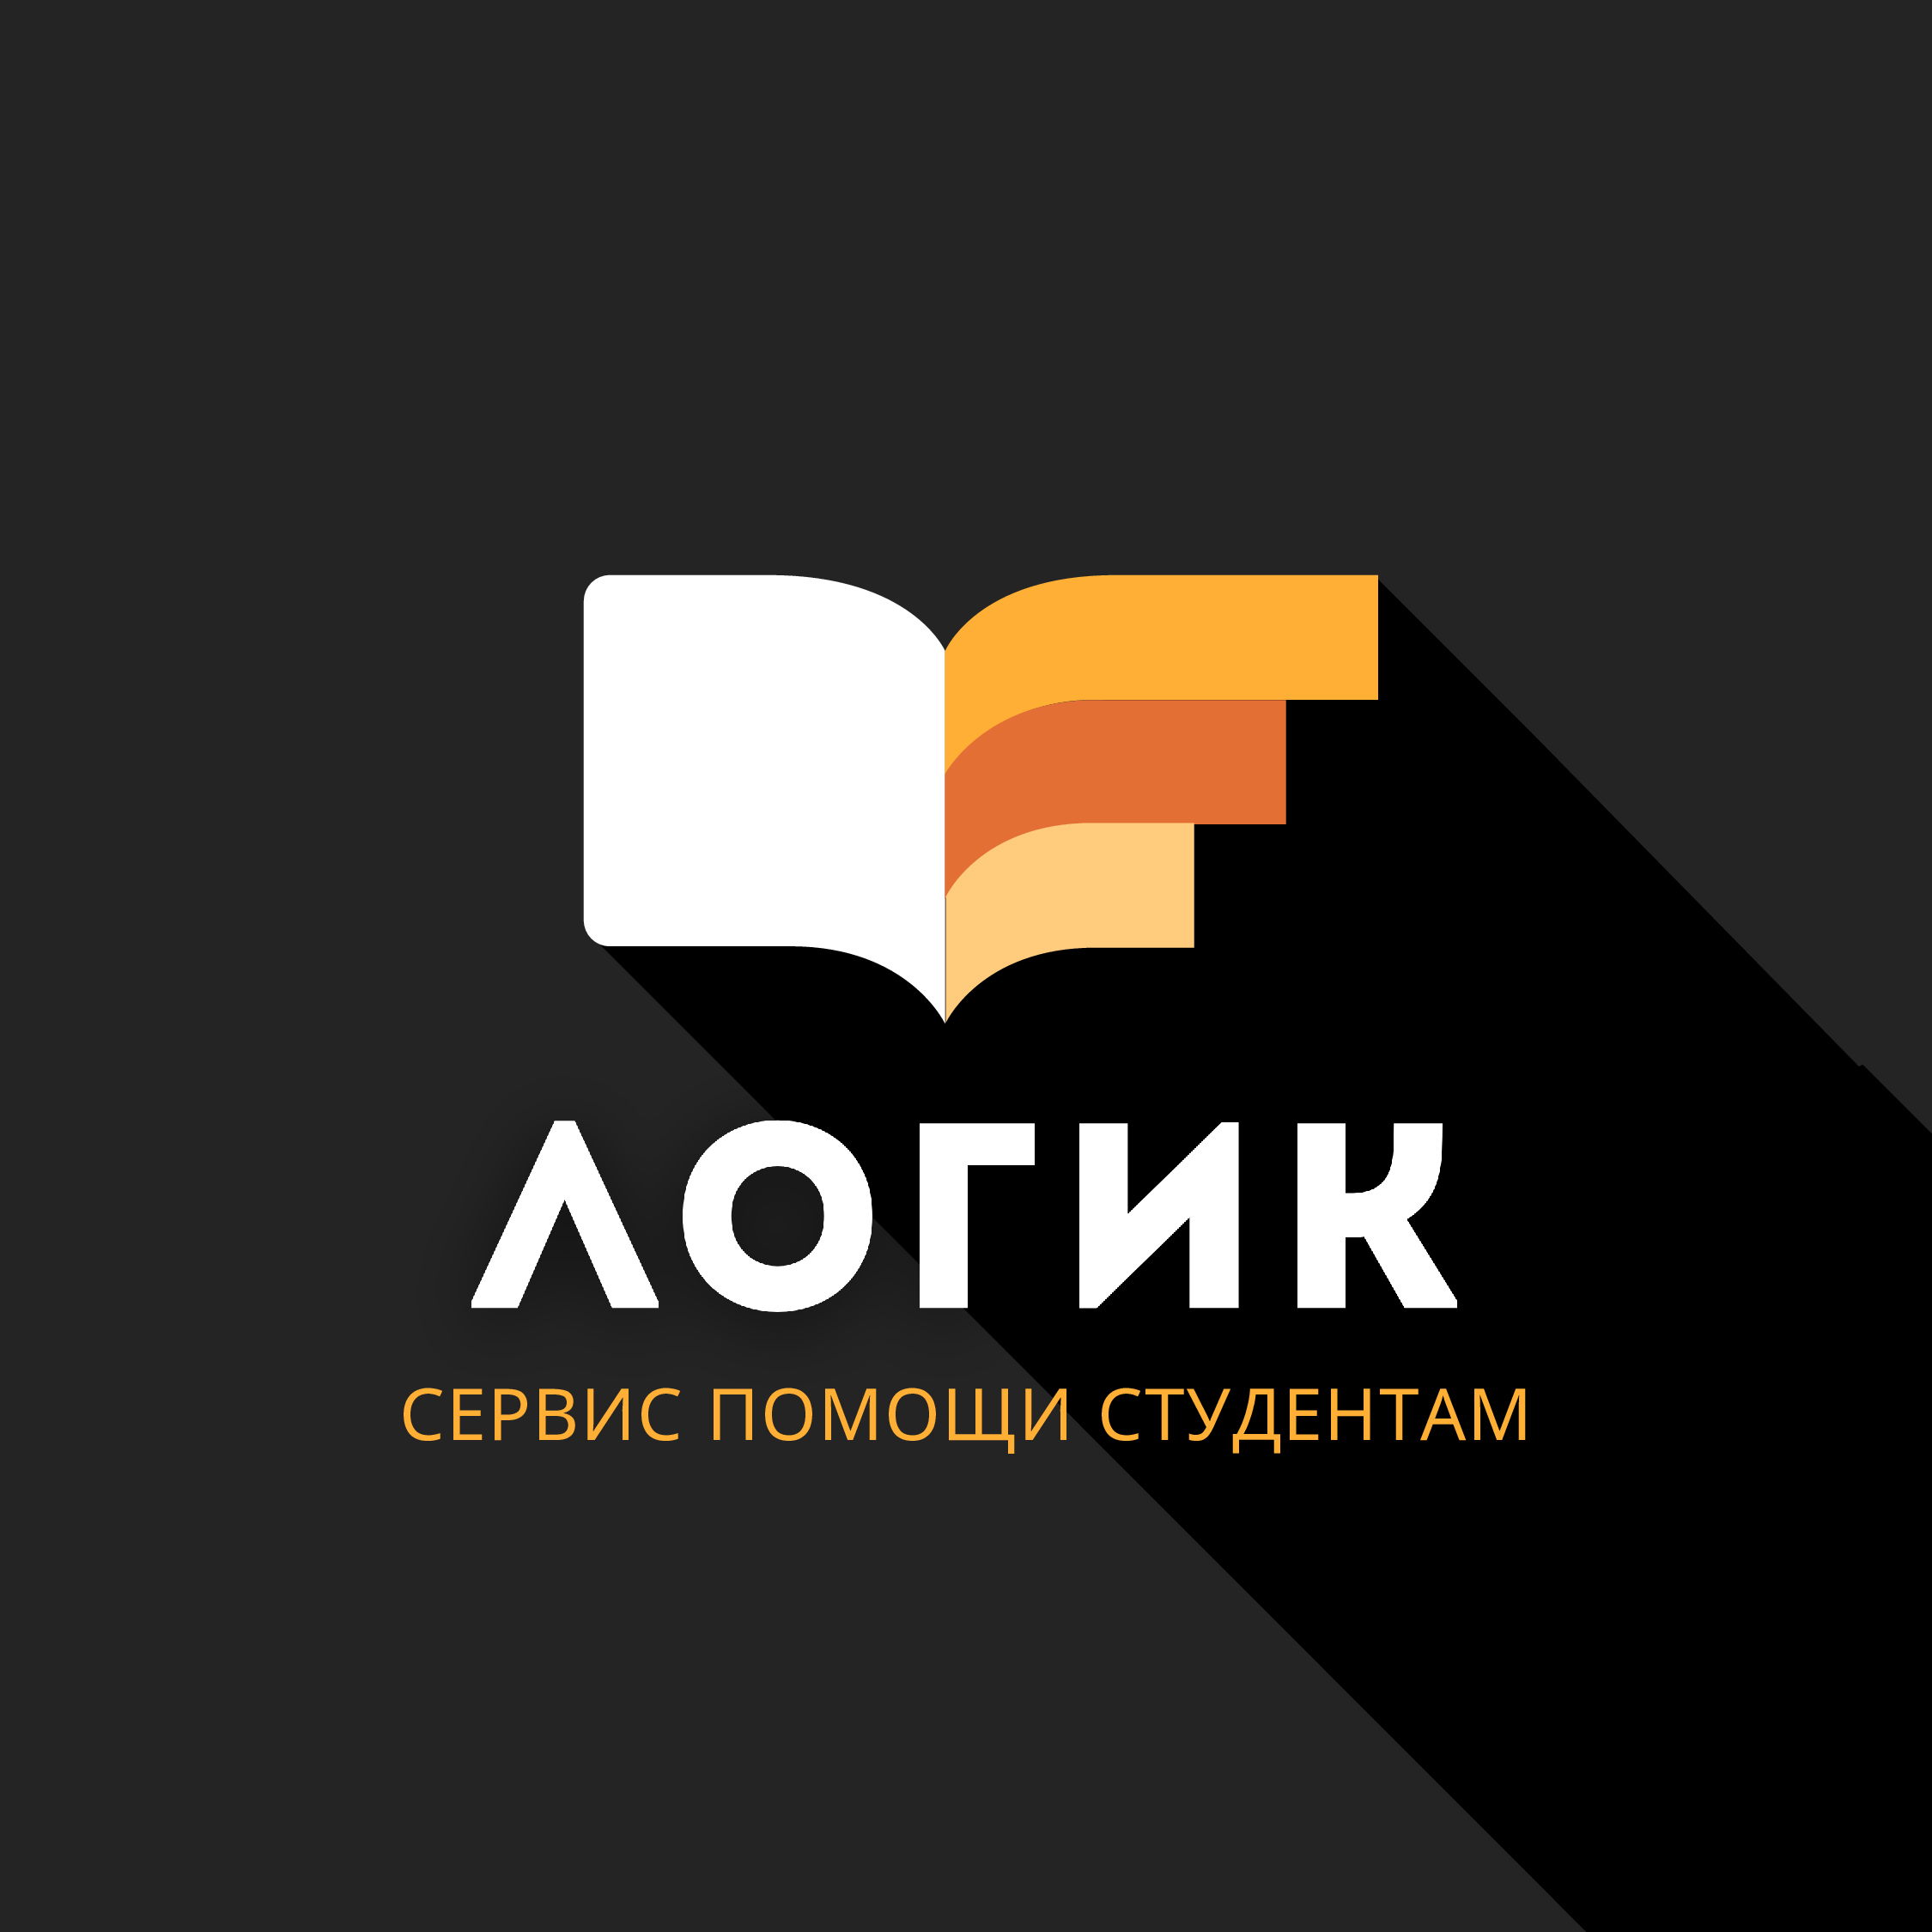 Логик — сервис помощи студентам и аспирантам в Омске